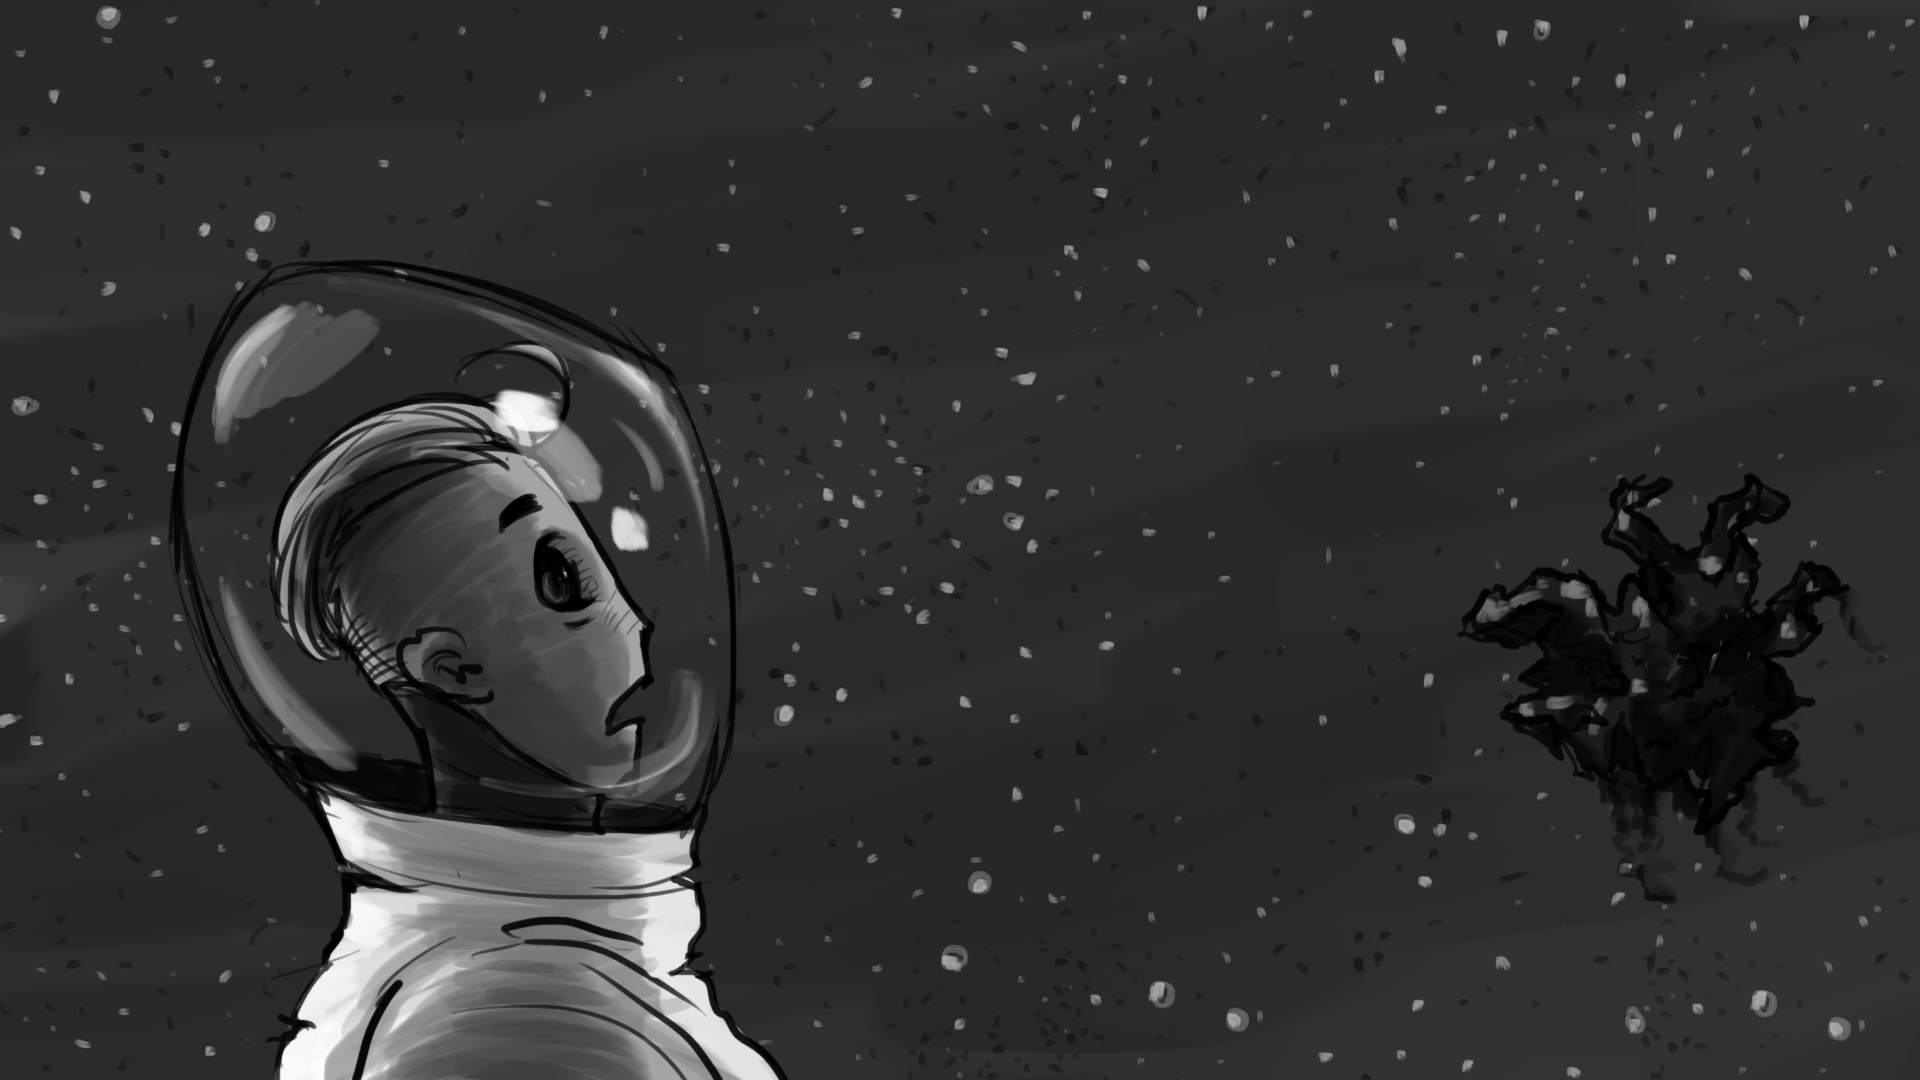 Rocket_Man_Storyboard_Artboard 26.jpg